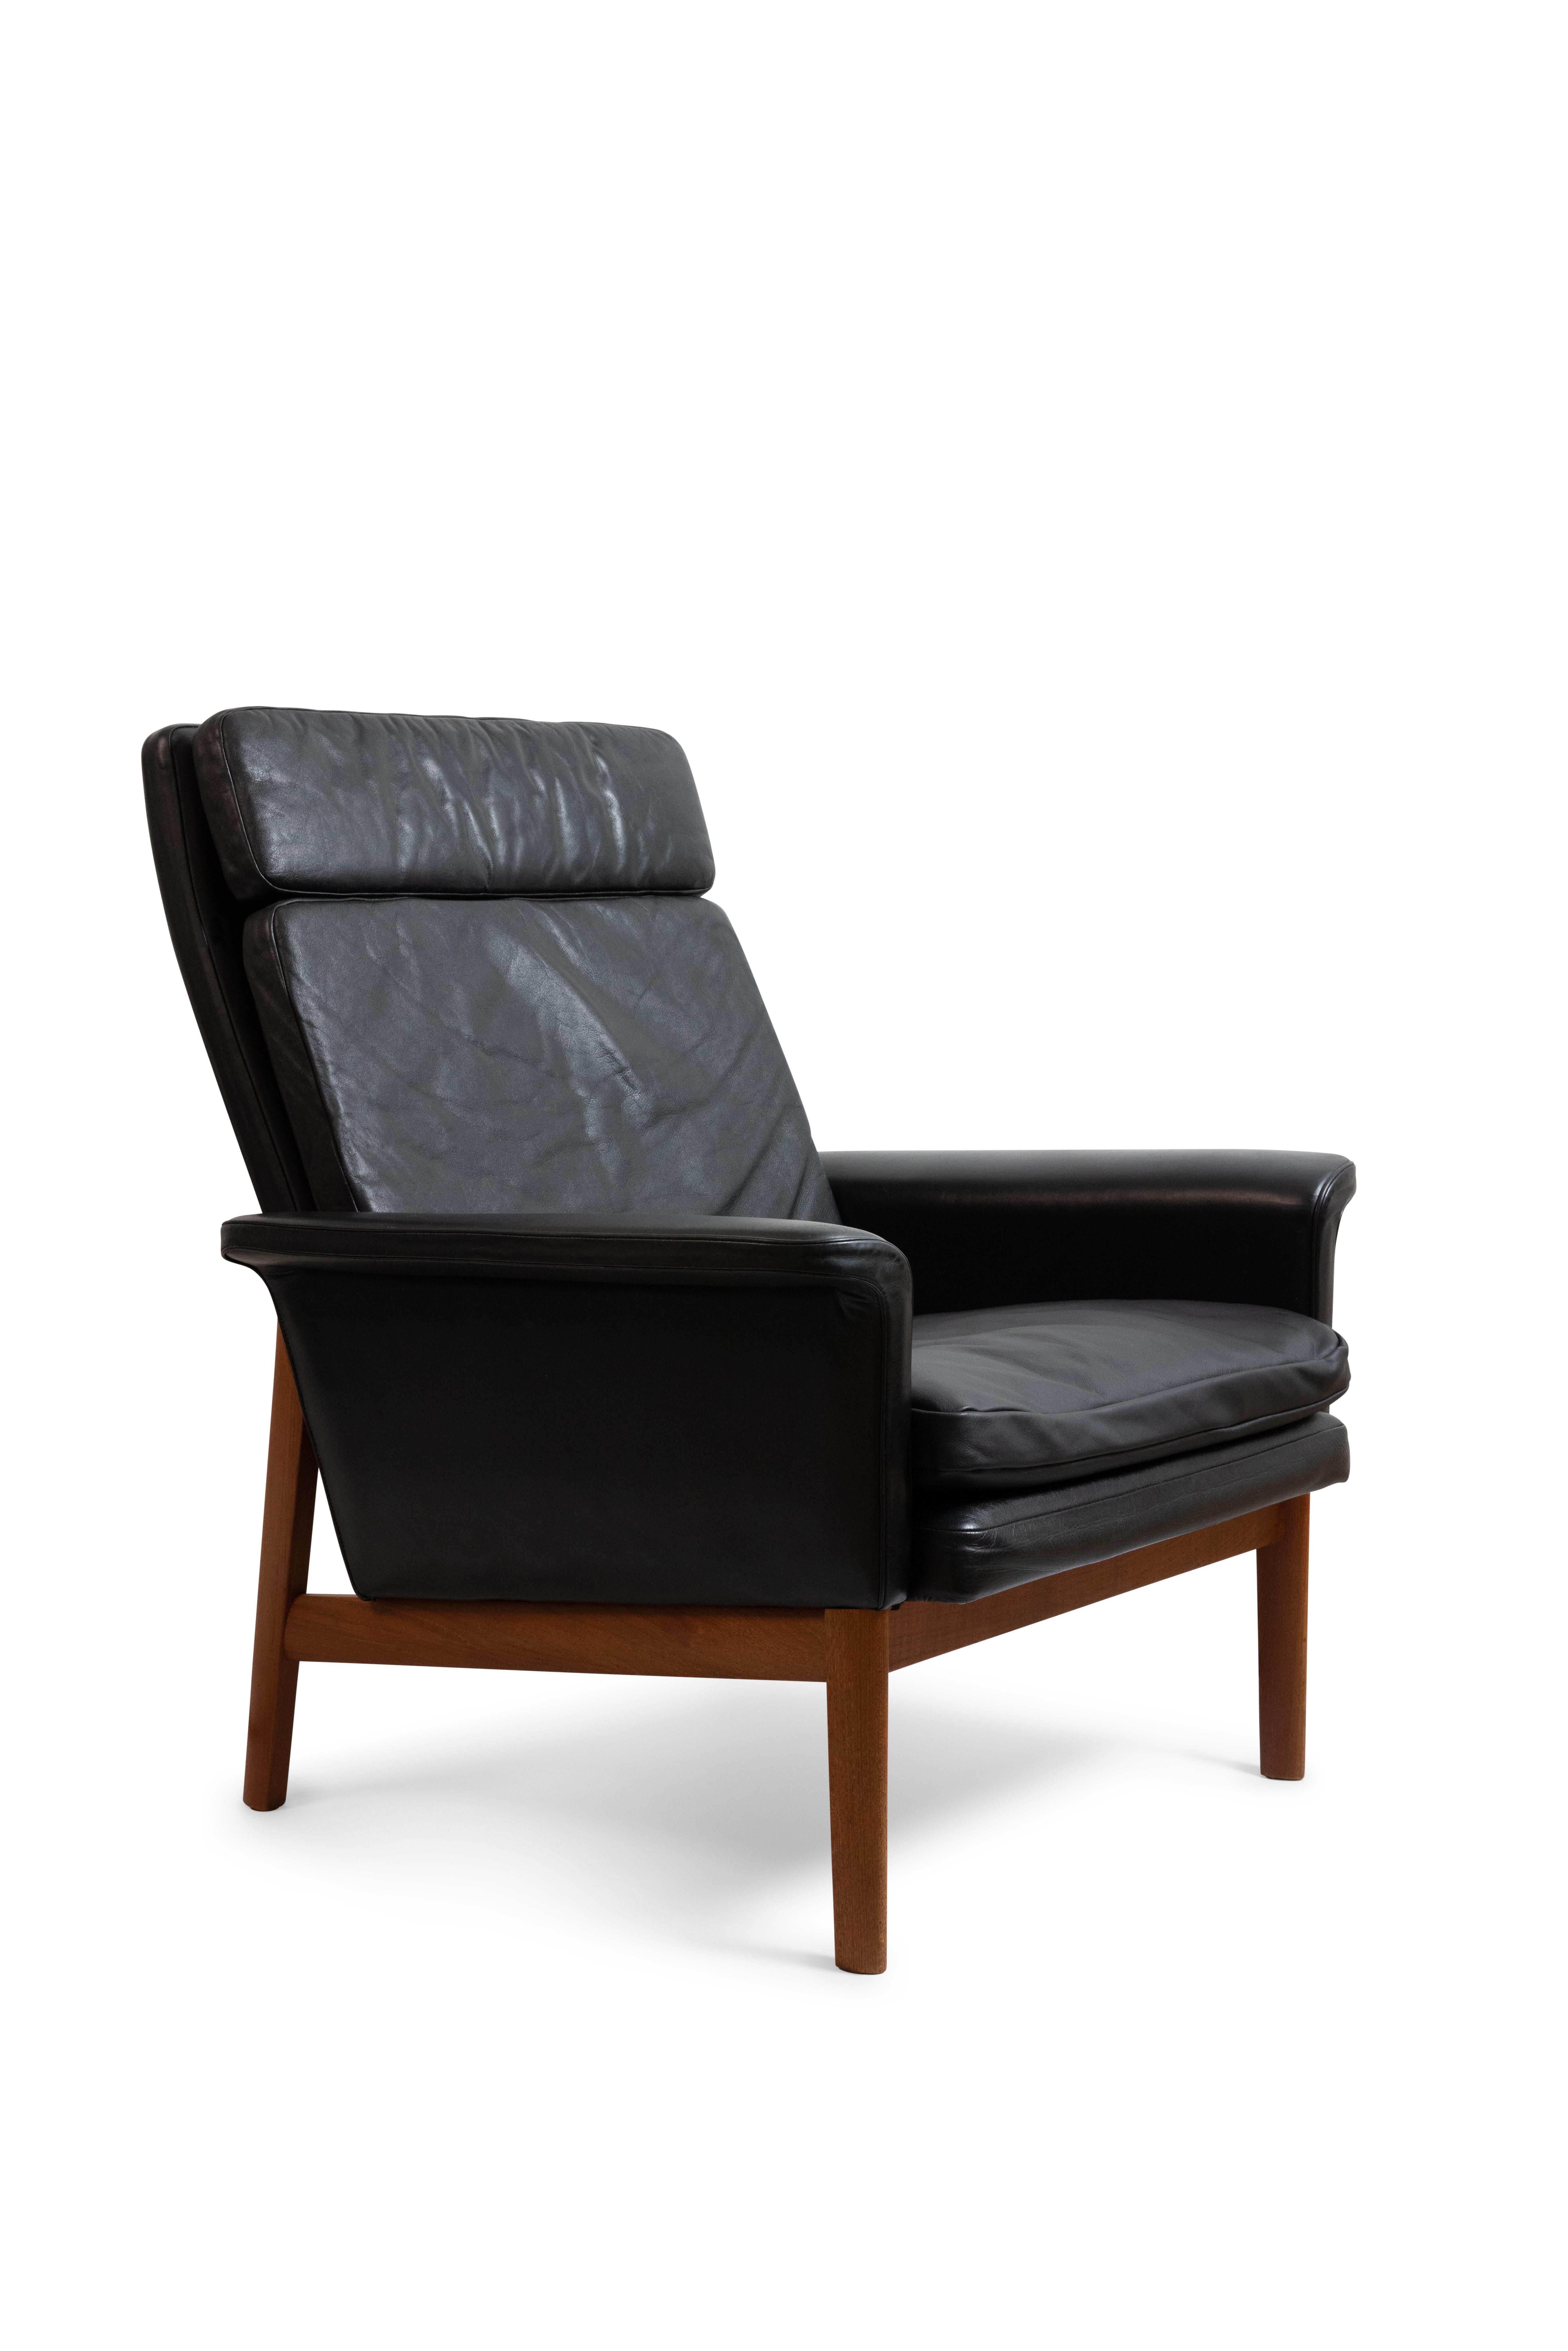 Chaise de salon à dossier haut Finn Juhls avec revêtement d'origine en cuir noir avec une merveilleuse patine. 

Cadre en teck massif.

Modèle 218 de la série Jupiter, fabriqué par France & Daverkosen.